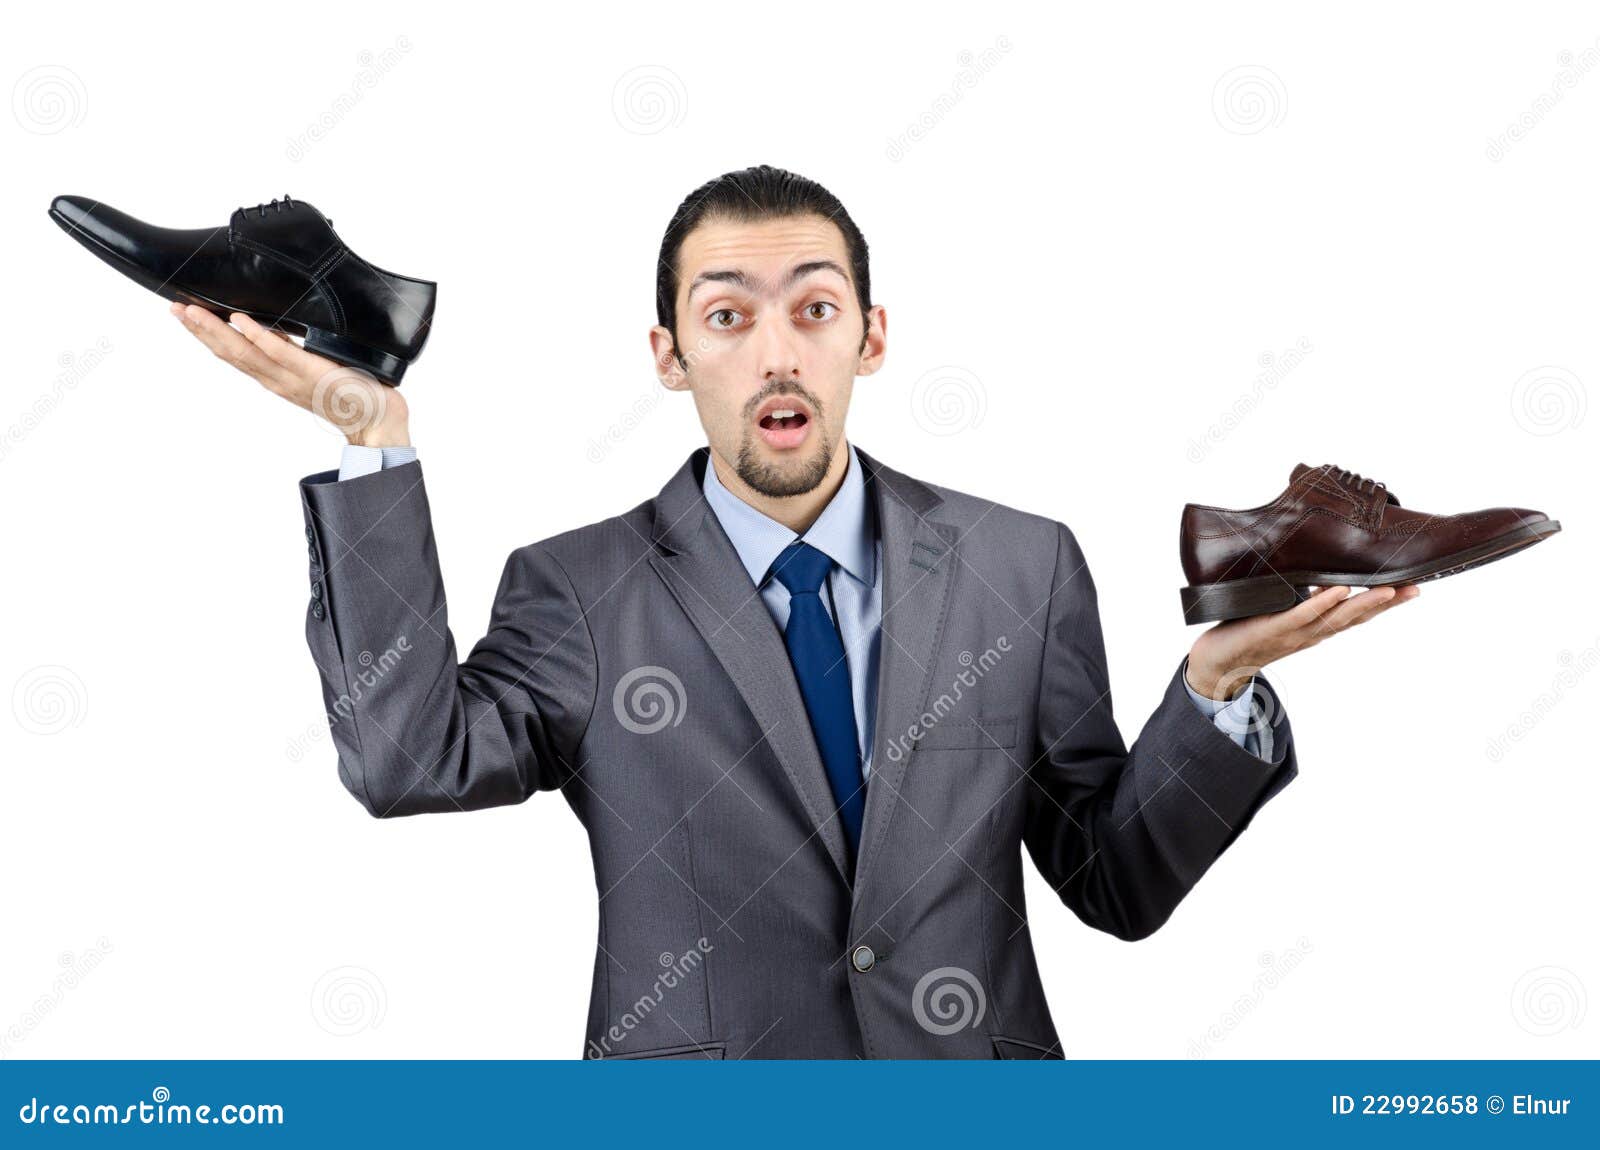 Мужчина выбирает обувь. Человек держит обувь. Мужчина держит обувь. Человек держит обувь в руках. Мужчина держит туфли.